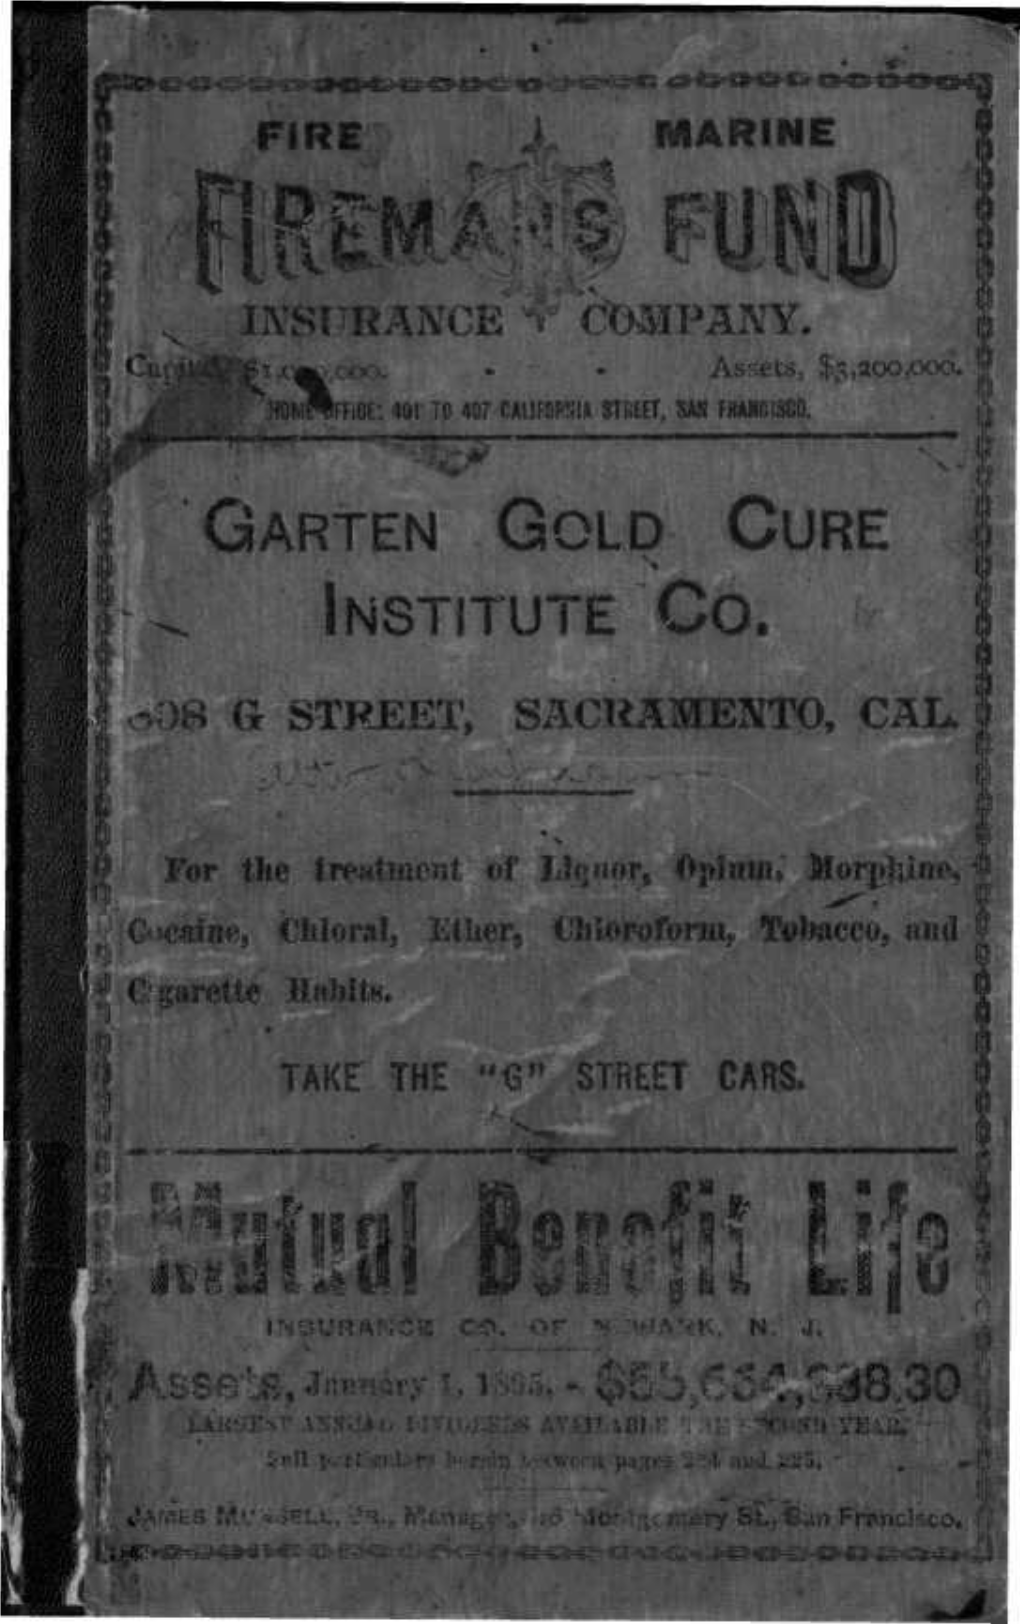 Garten Gold Cure Institute